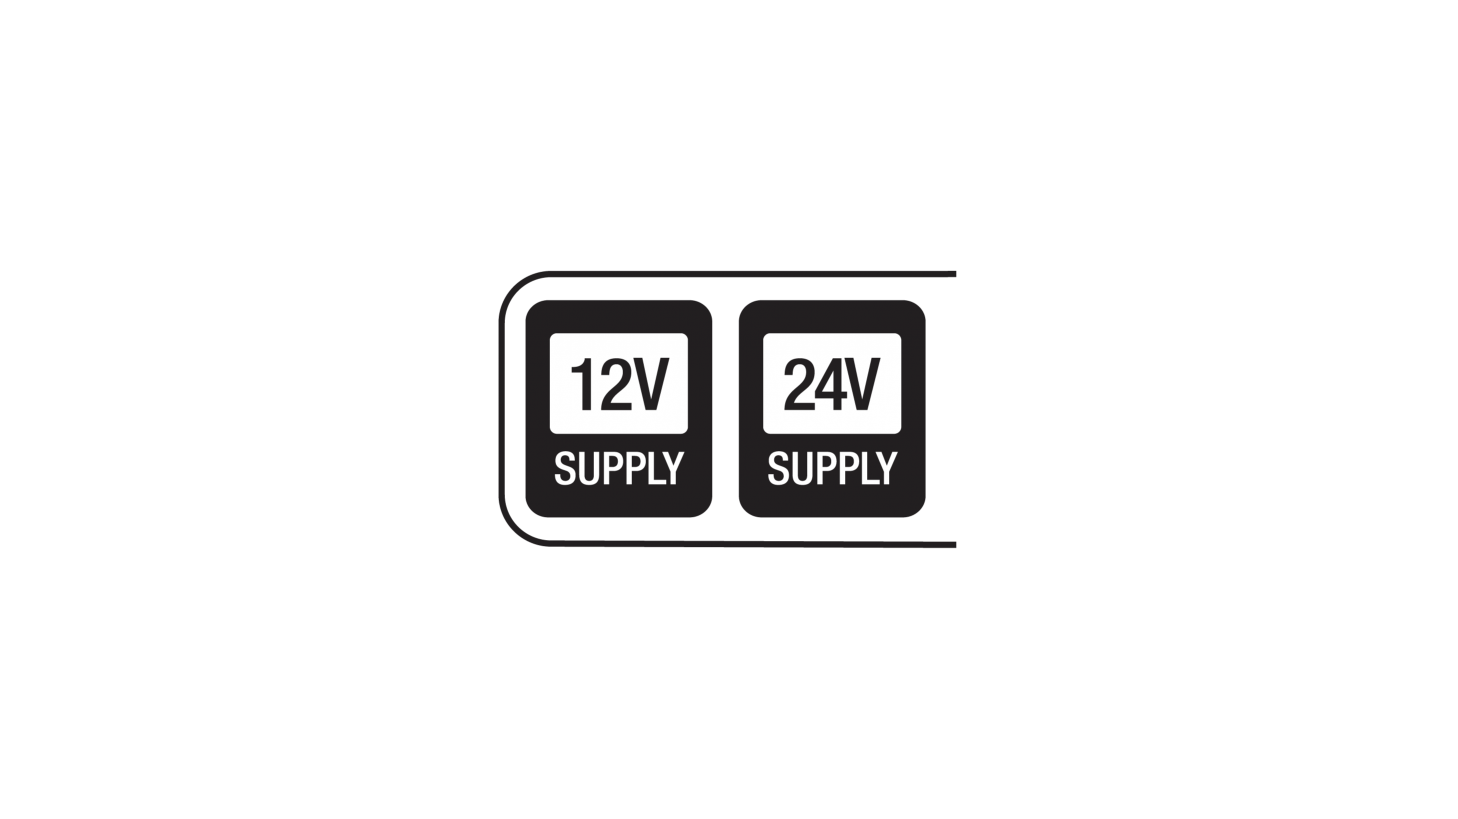 12V / 24V Supply Mode LED